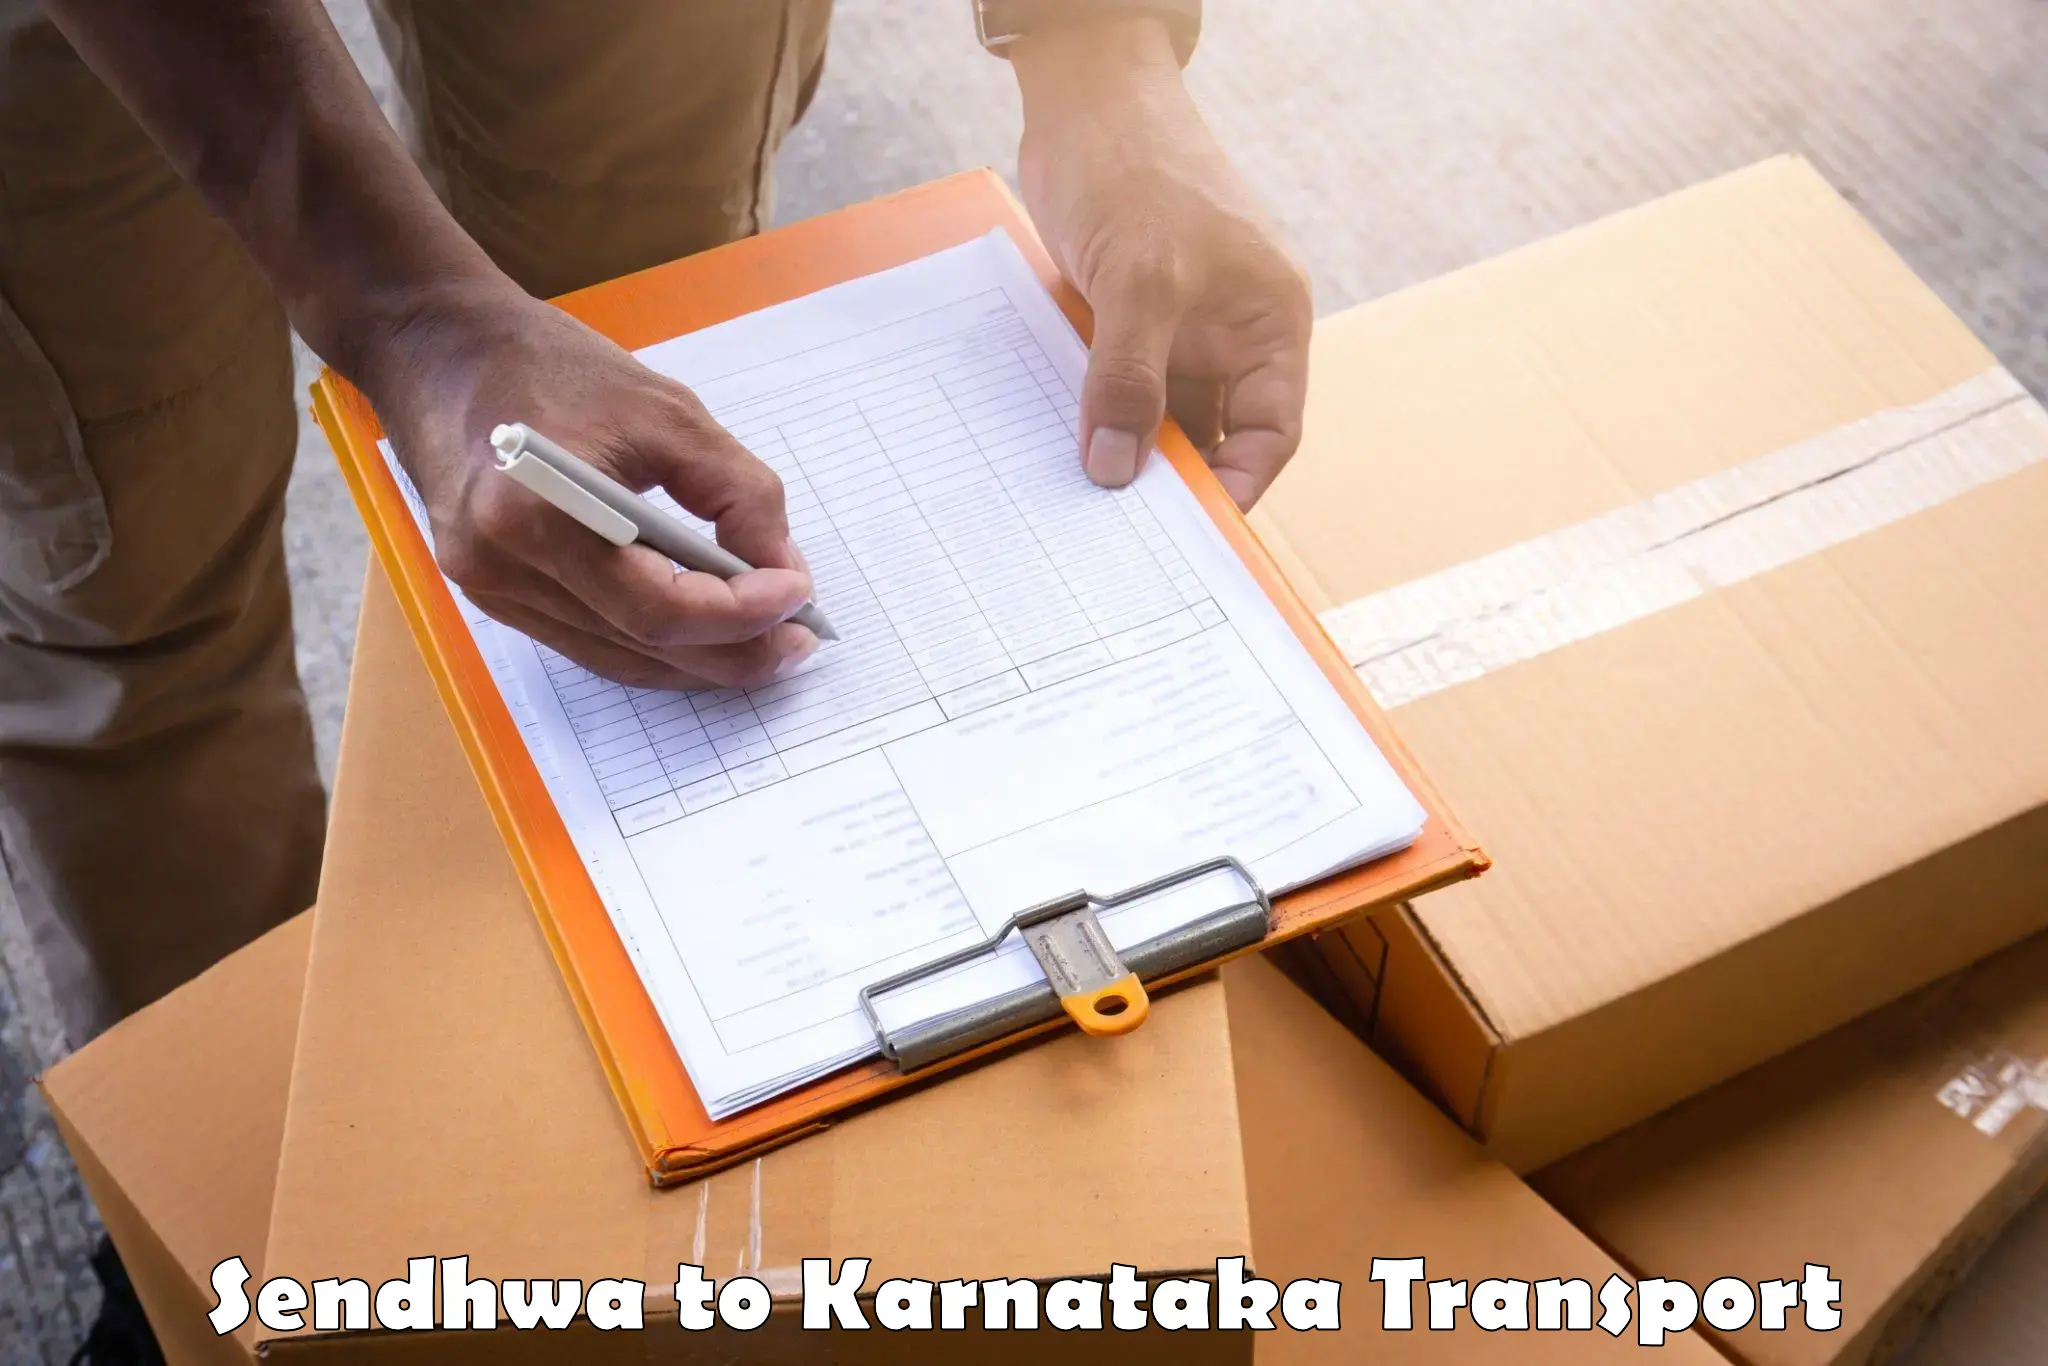 Interstate transport services in Sendhwa to Thirthahalli